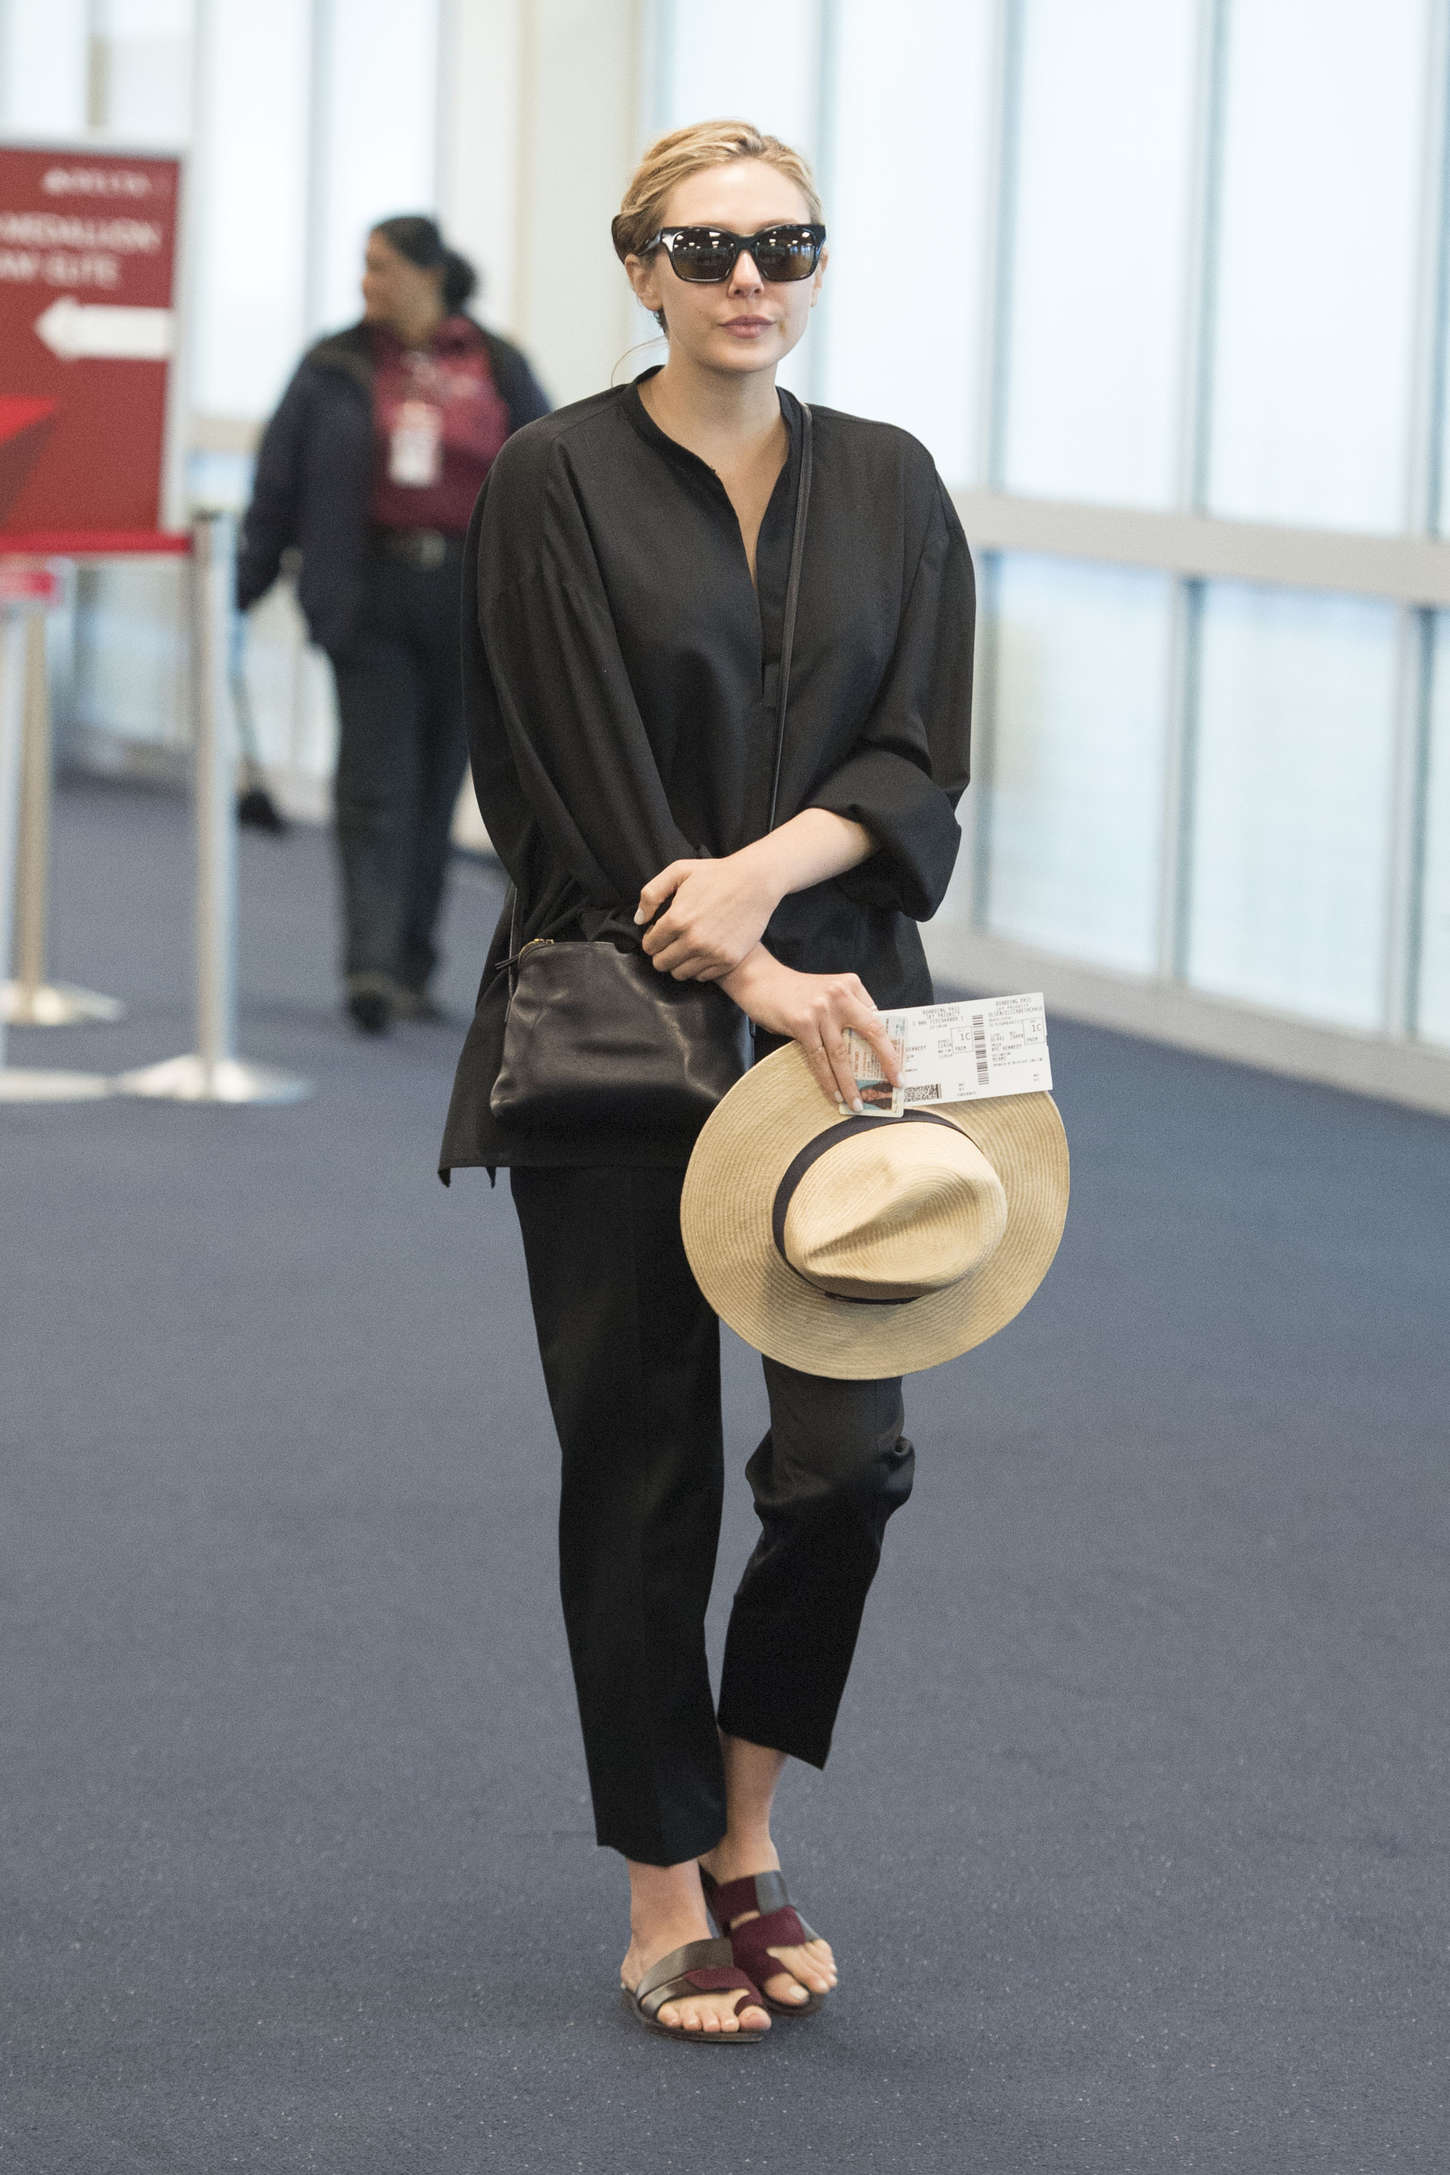 Elizabeth Olsen JFK Airport February 15, 2019 – Star Style